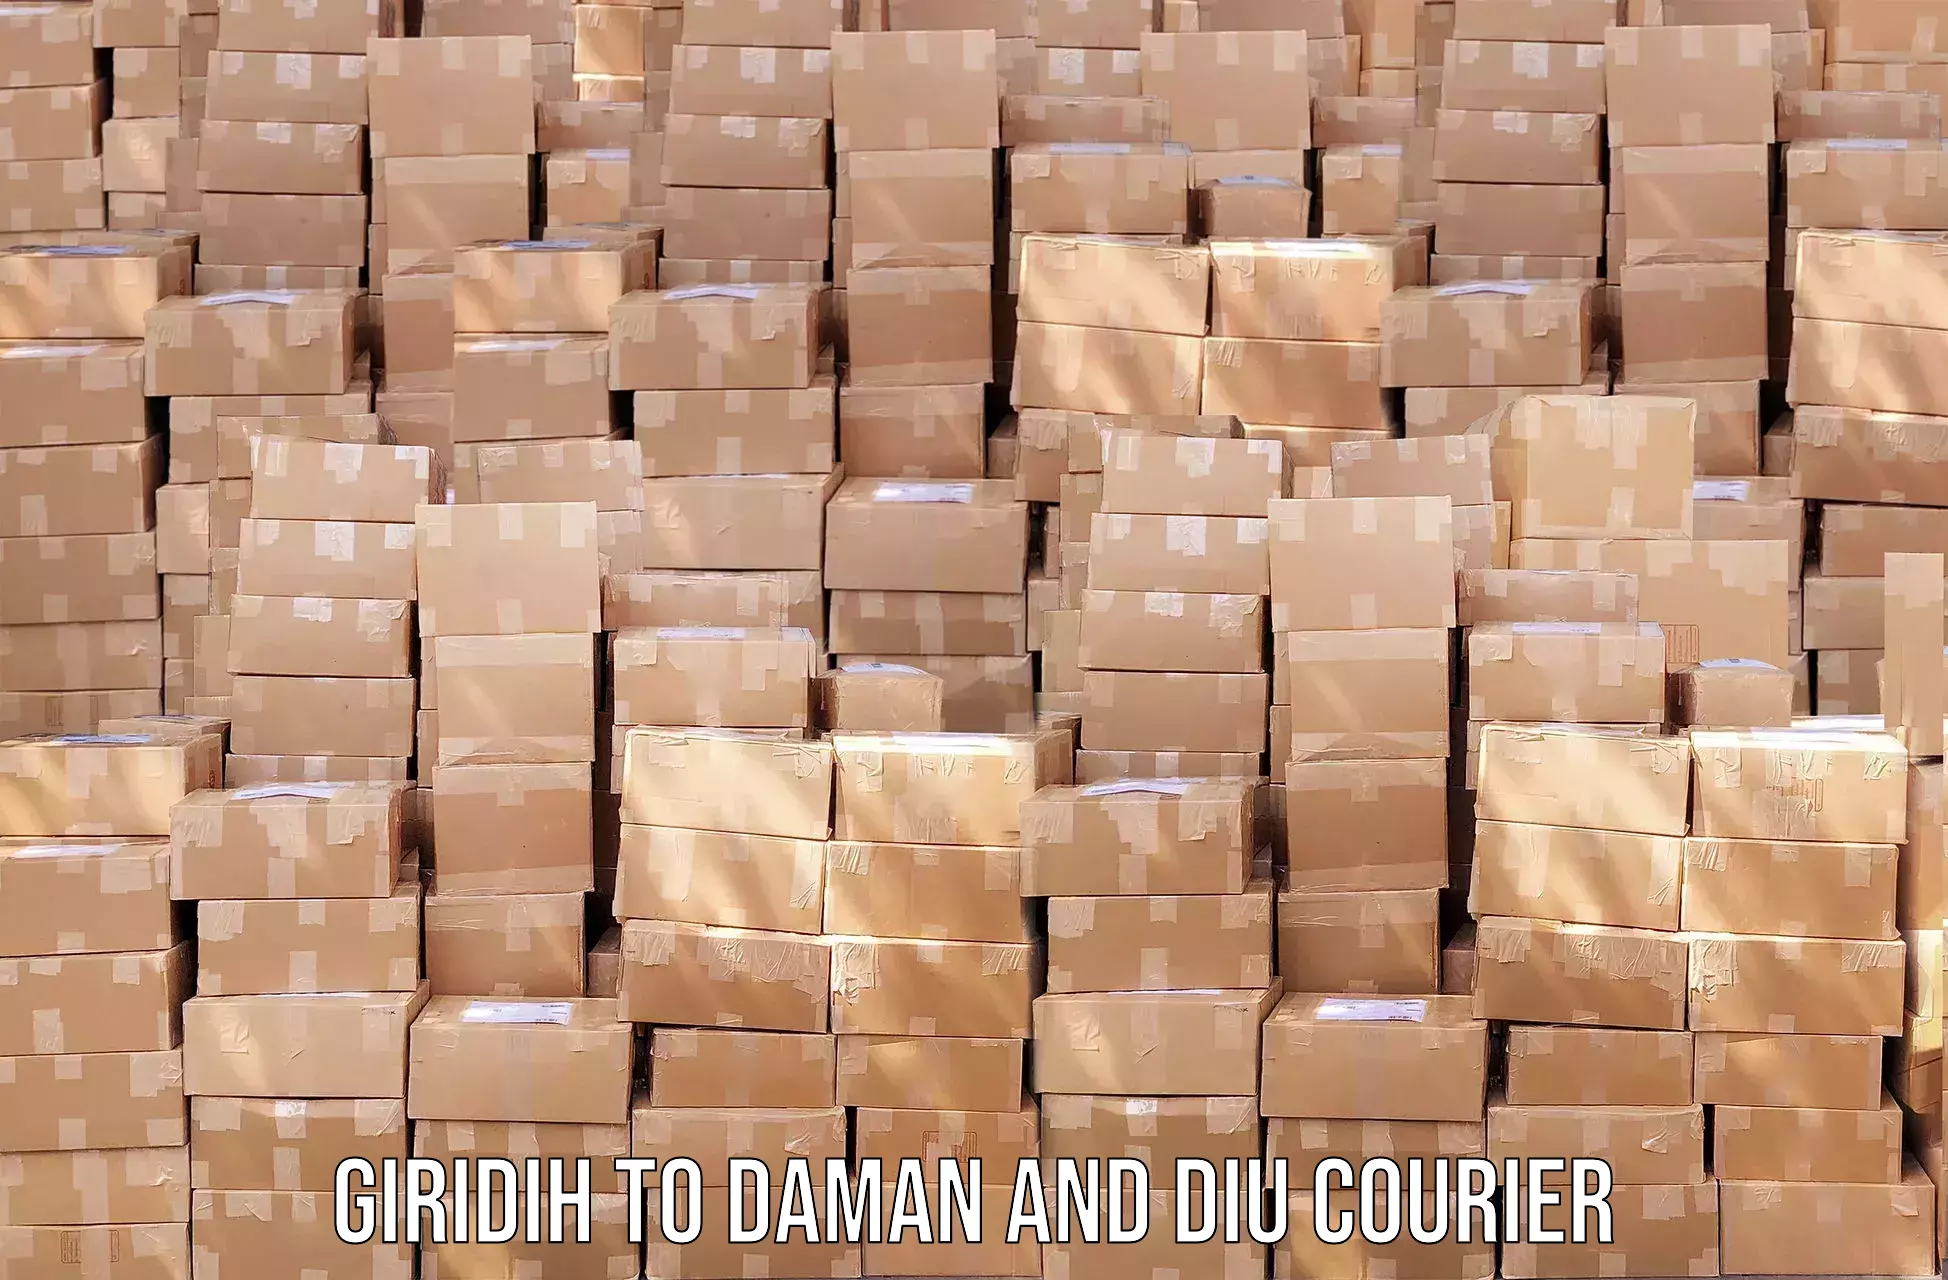 Efficient cargo handling Giridih to Daman and Diu